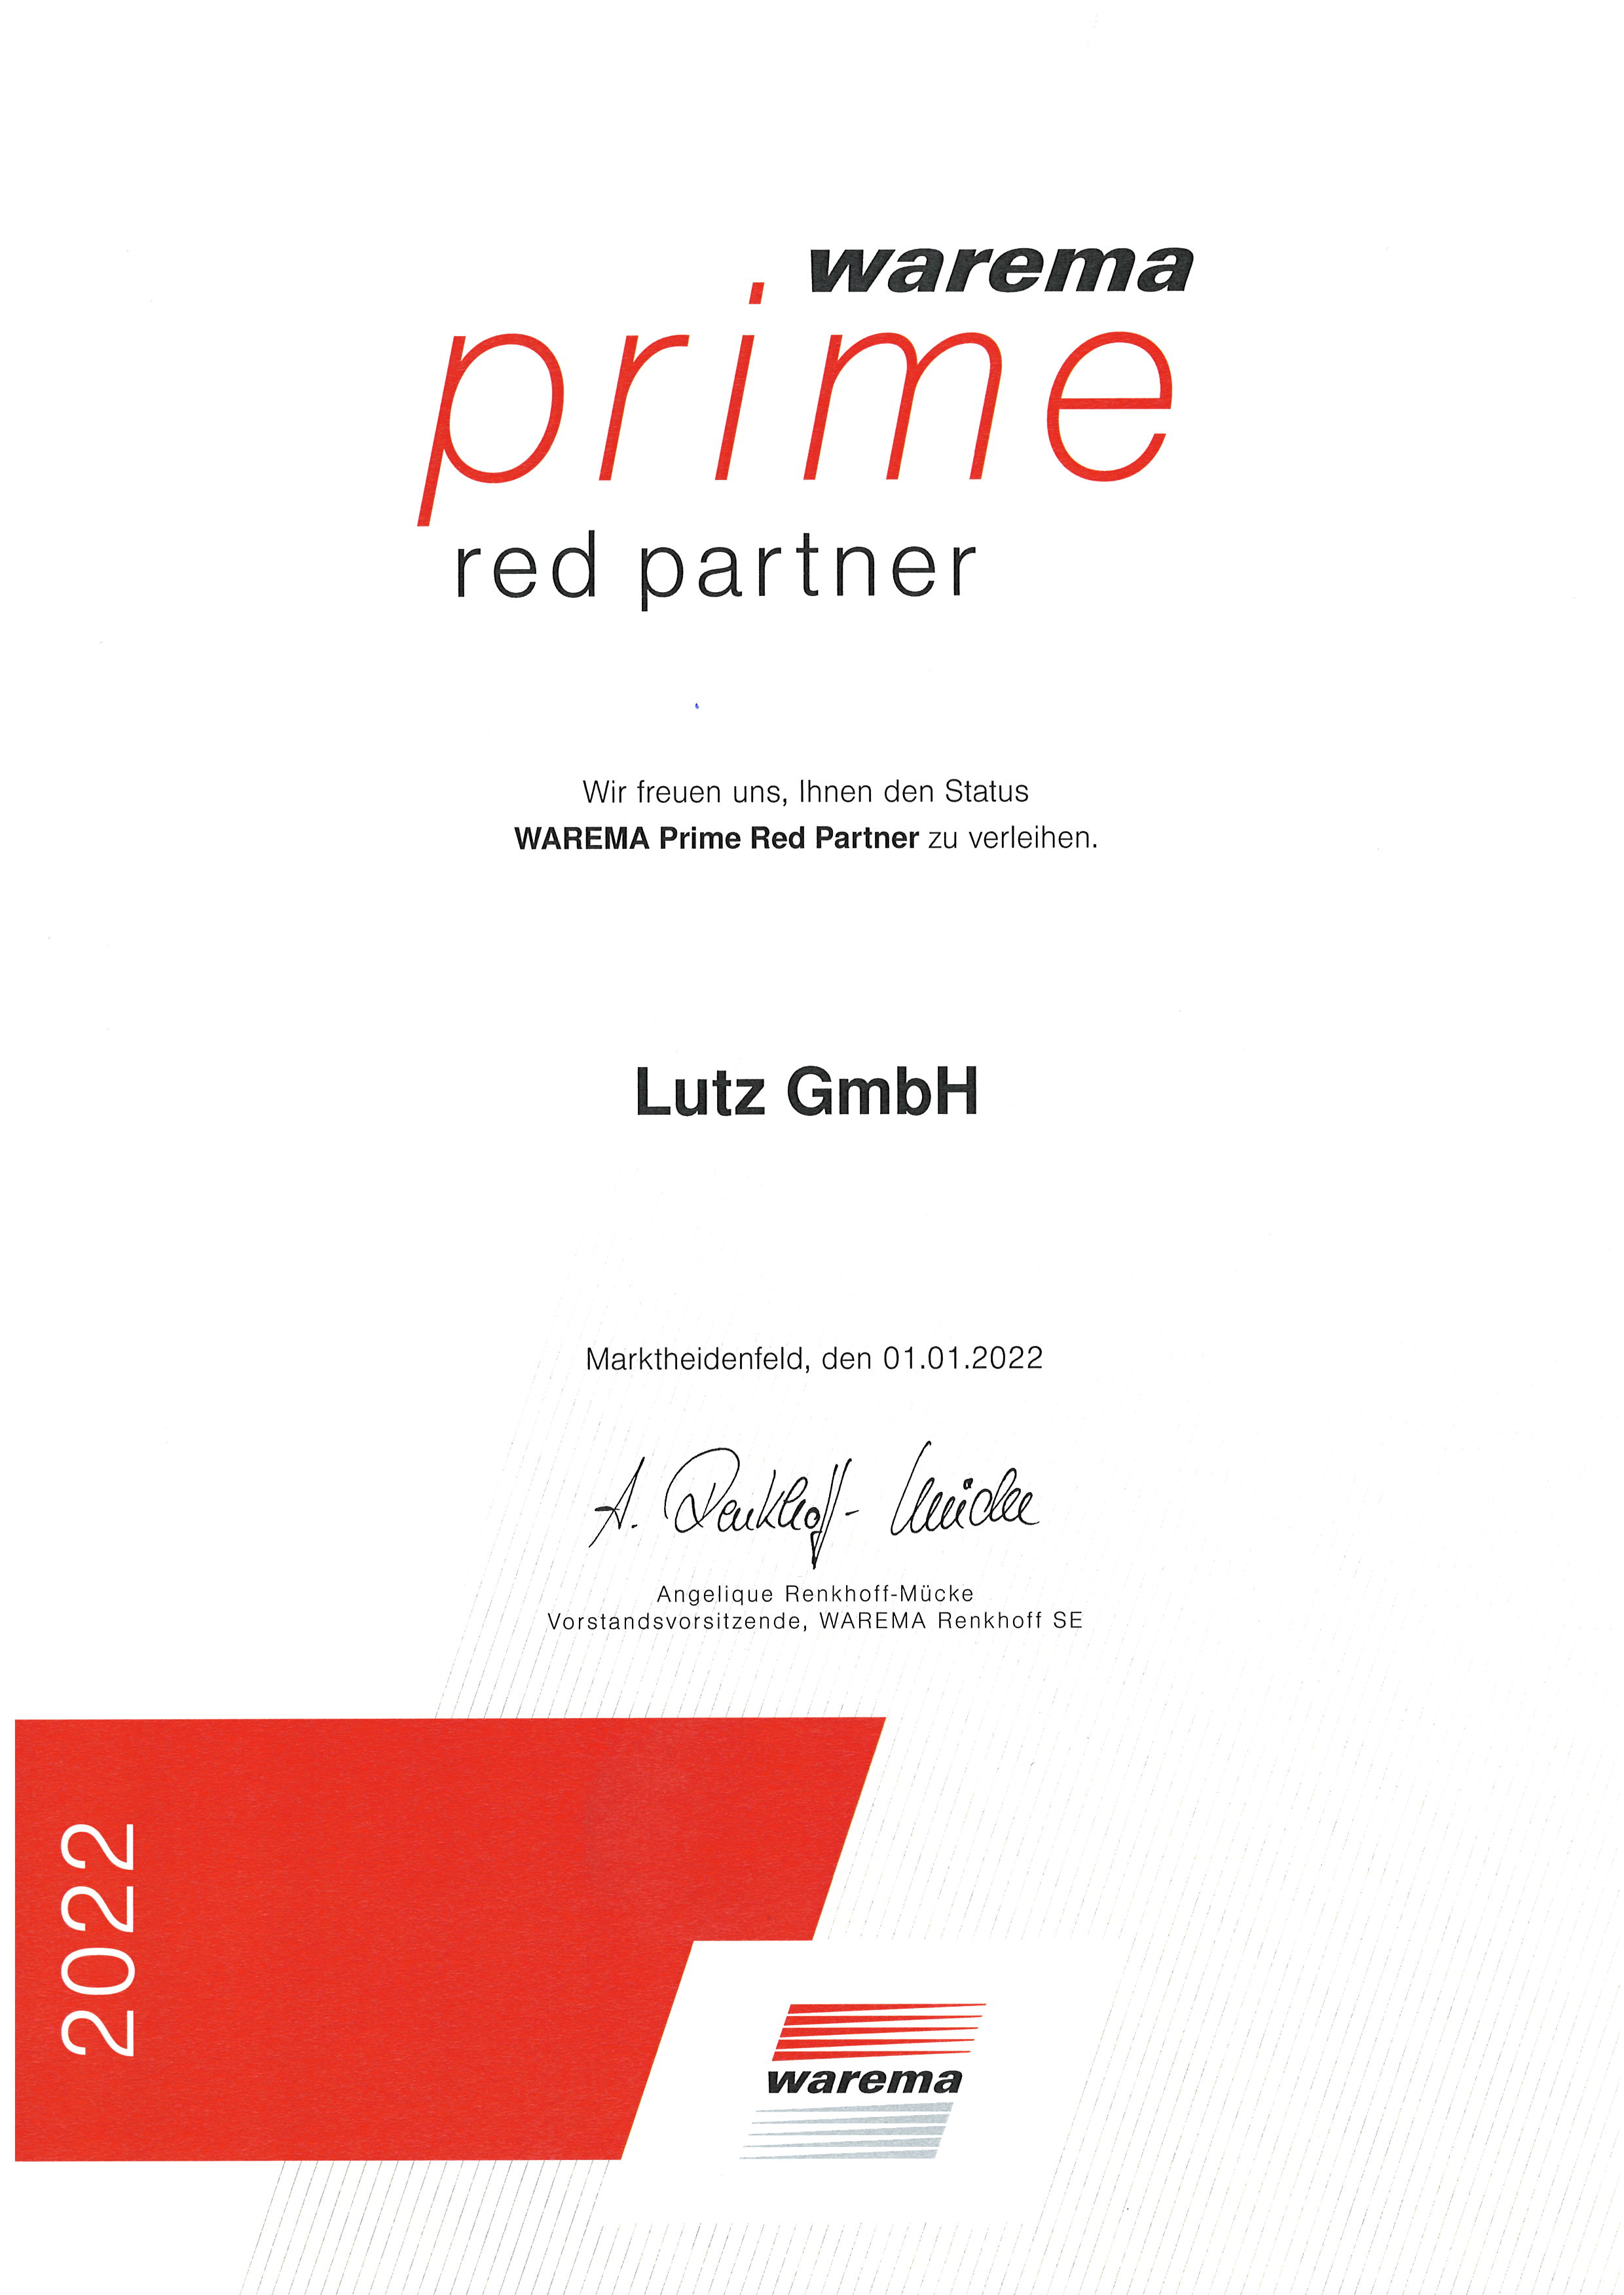 Für das Jahr 2022 haben wir erneut den WAREMA Prime Red Status verliehen bekommen. Wir freuen uns über die Auszeichnung!